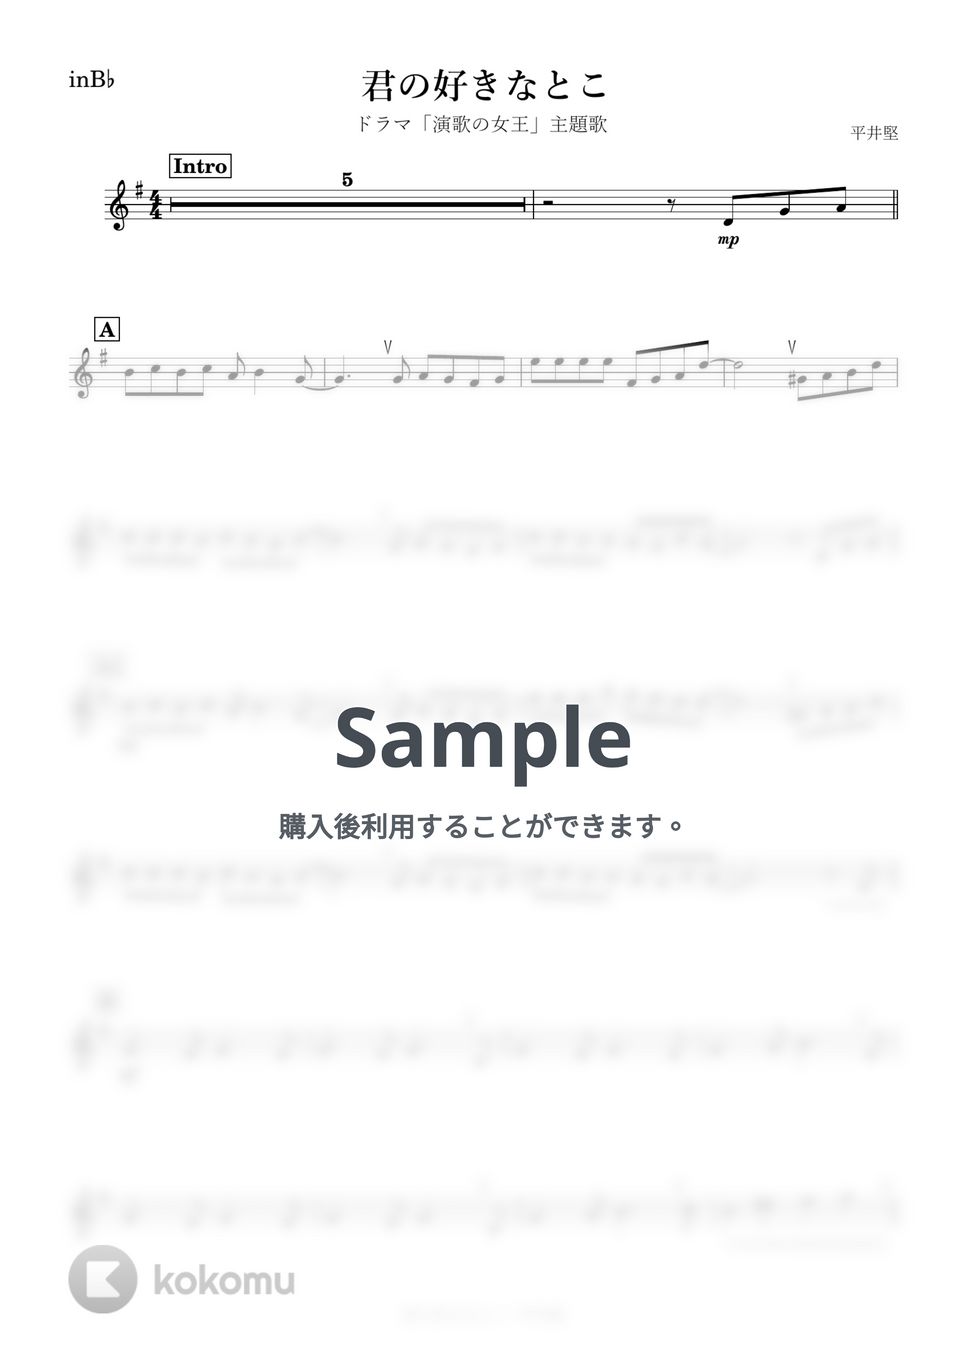 平井堅 - 君の好きなとこ (B♭) by kanamusic